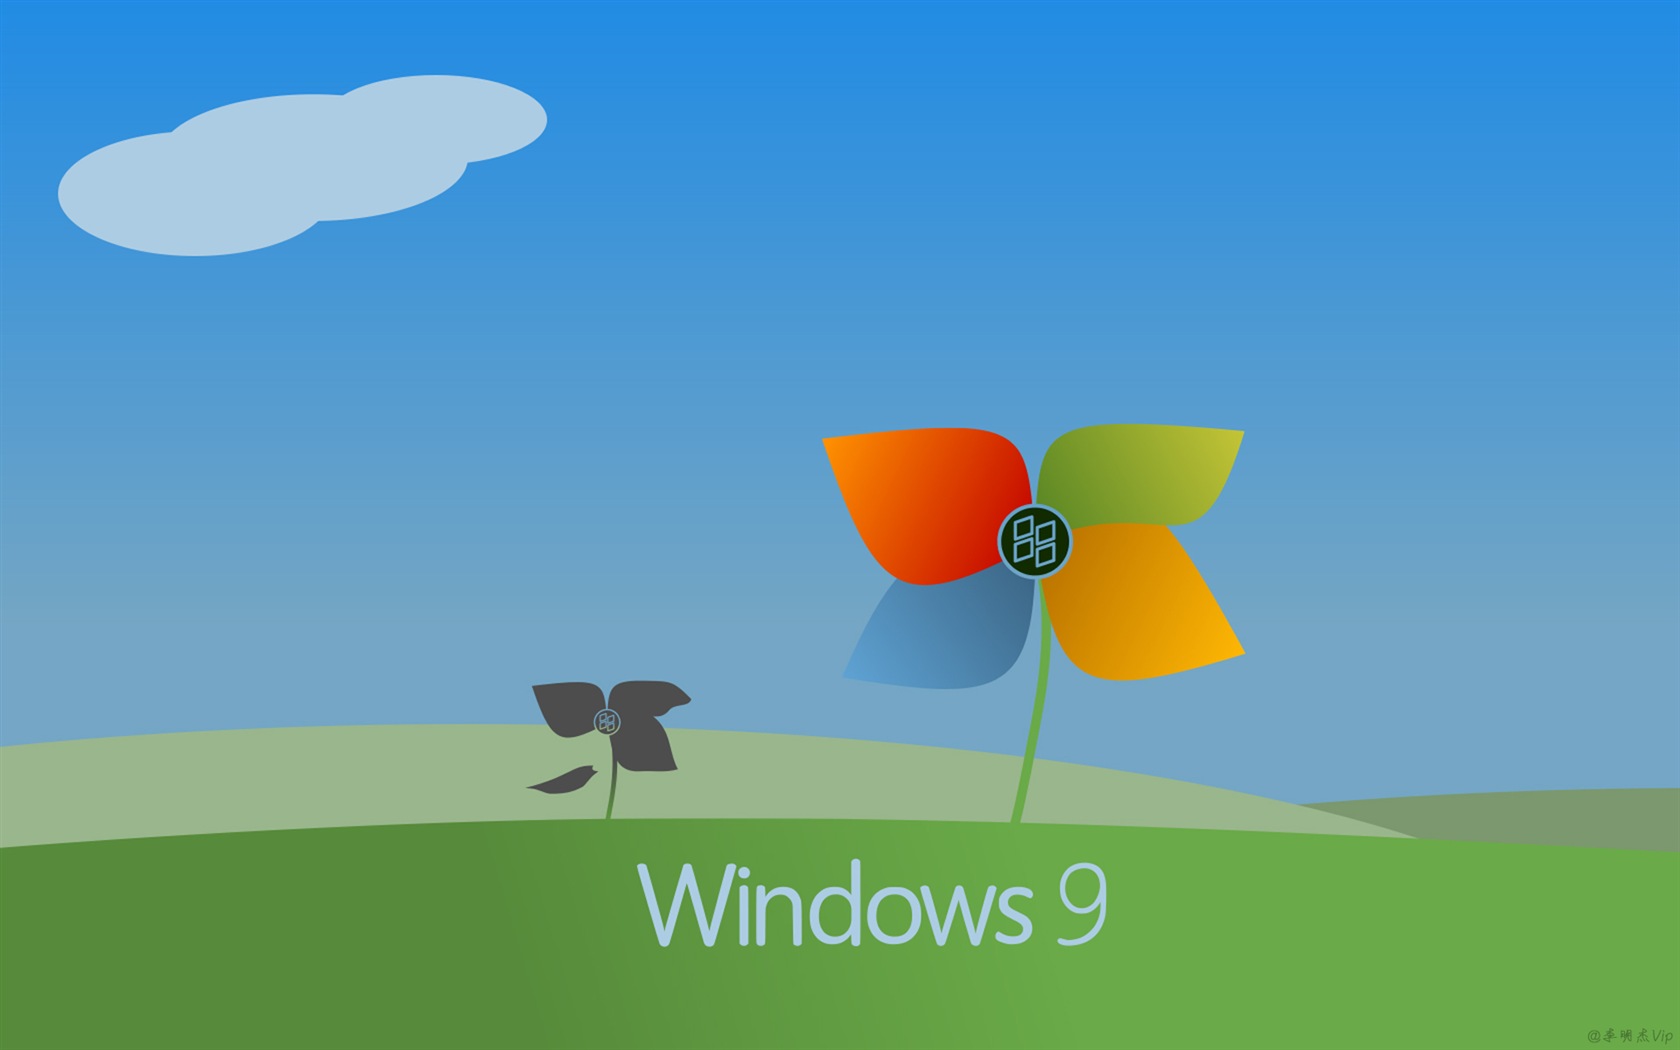 微软 Windows 9 系统主题 高清壁纸5 - 1680x1050